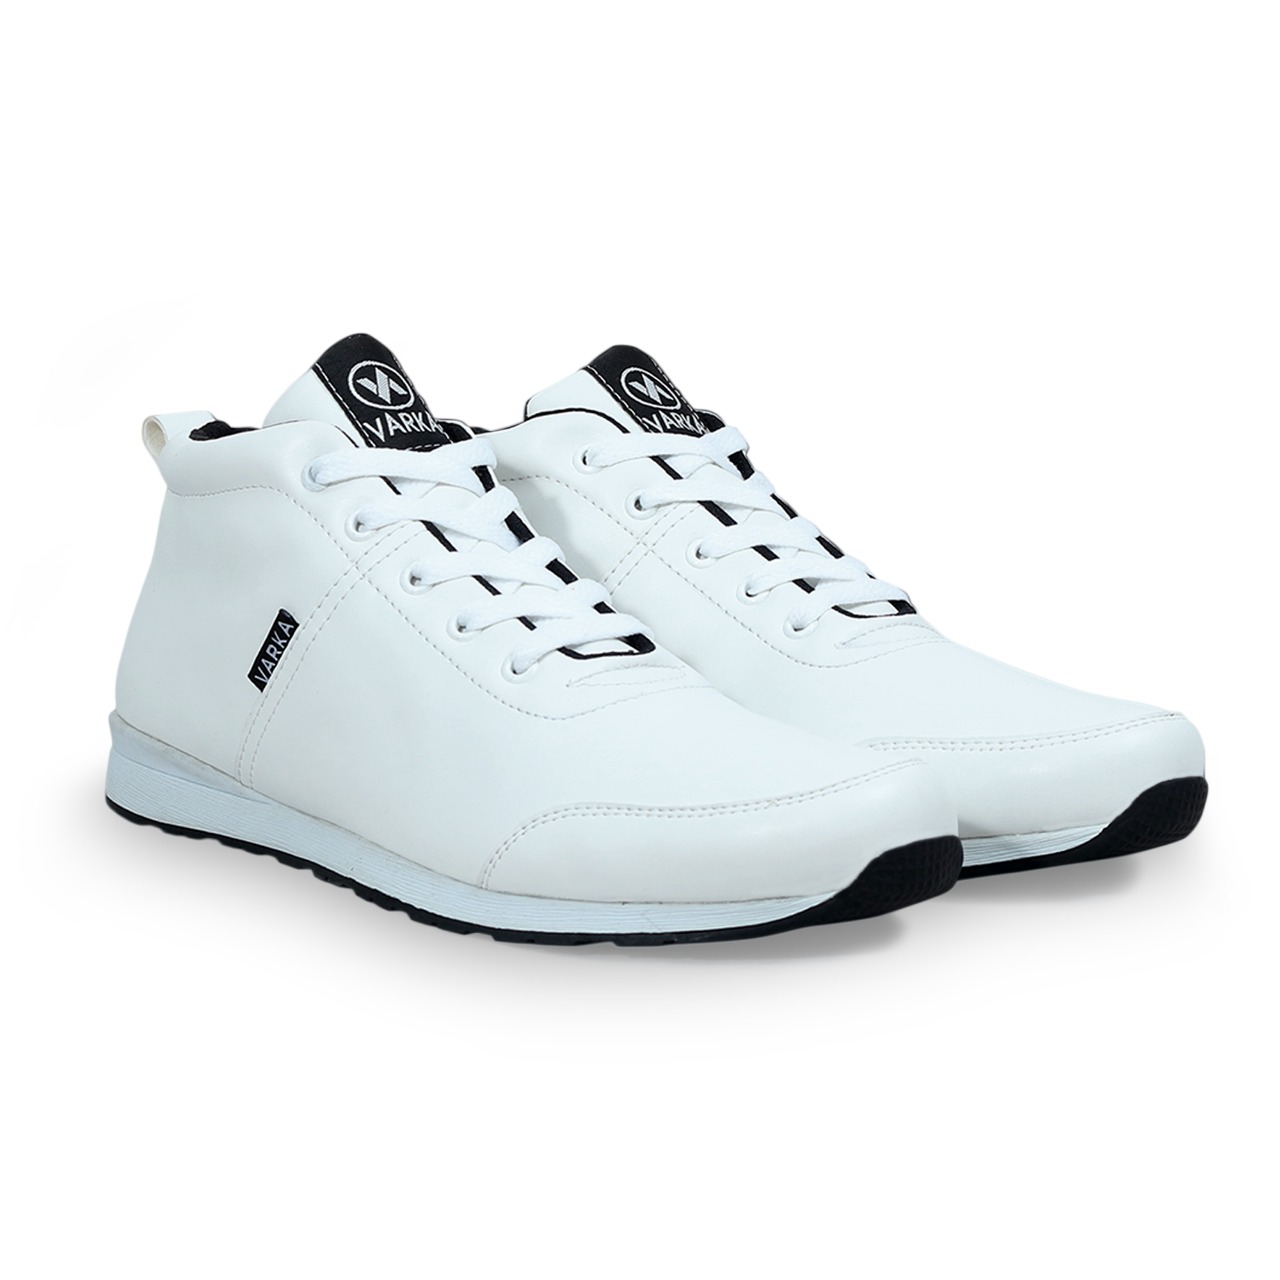 Sepatu Sneakers Pria Terbaru V 4045 V 4046 V 4047 Brand Varka Sepatu kets  Olahraga Running Harga Murah Berkualitas